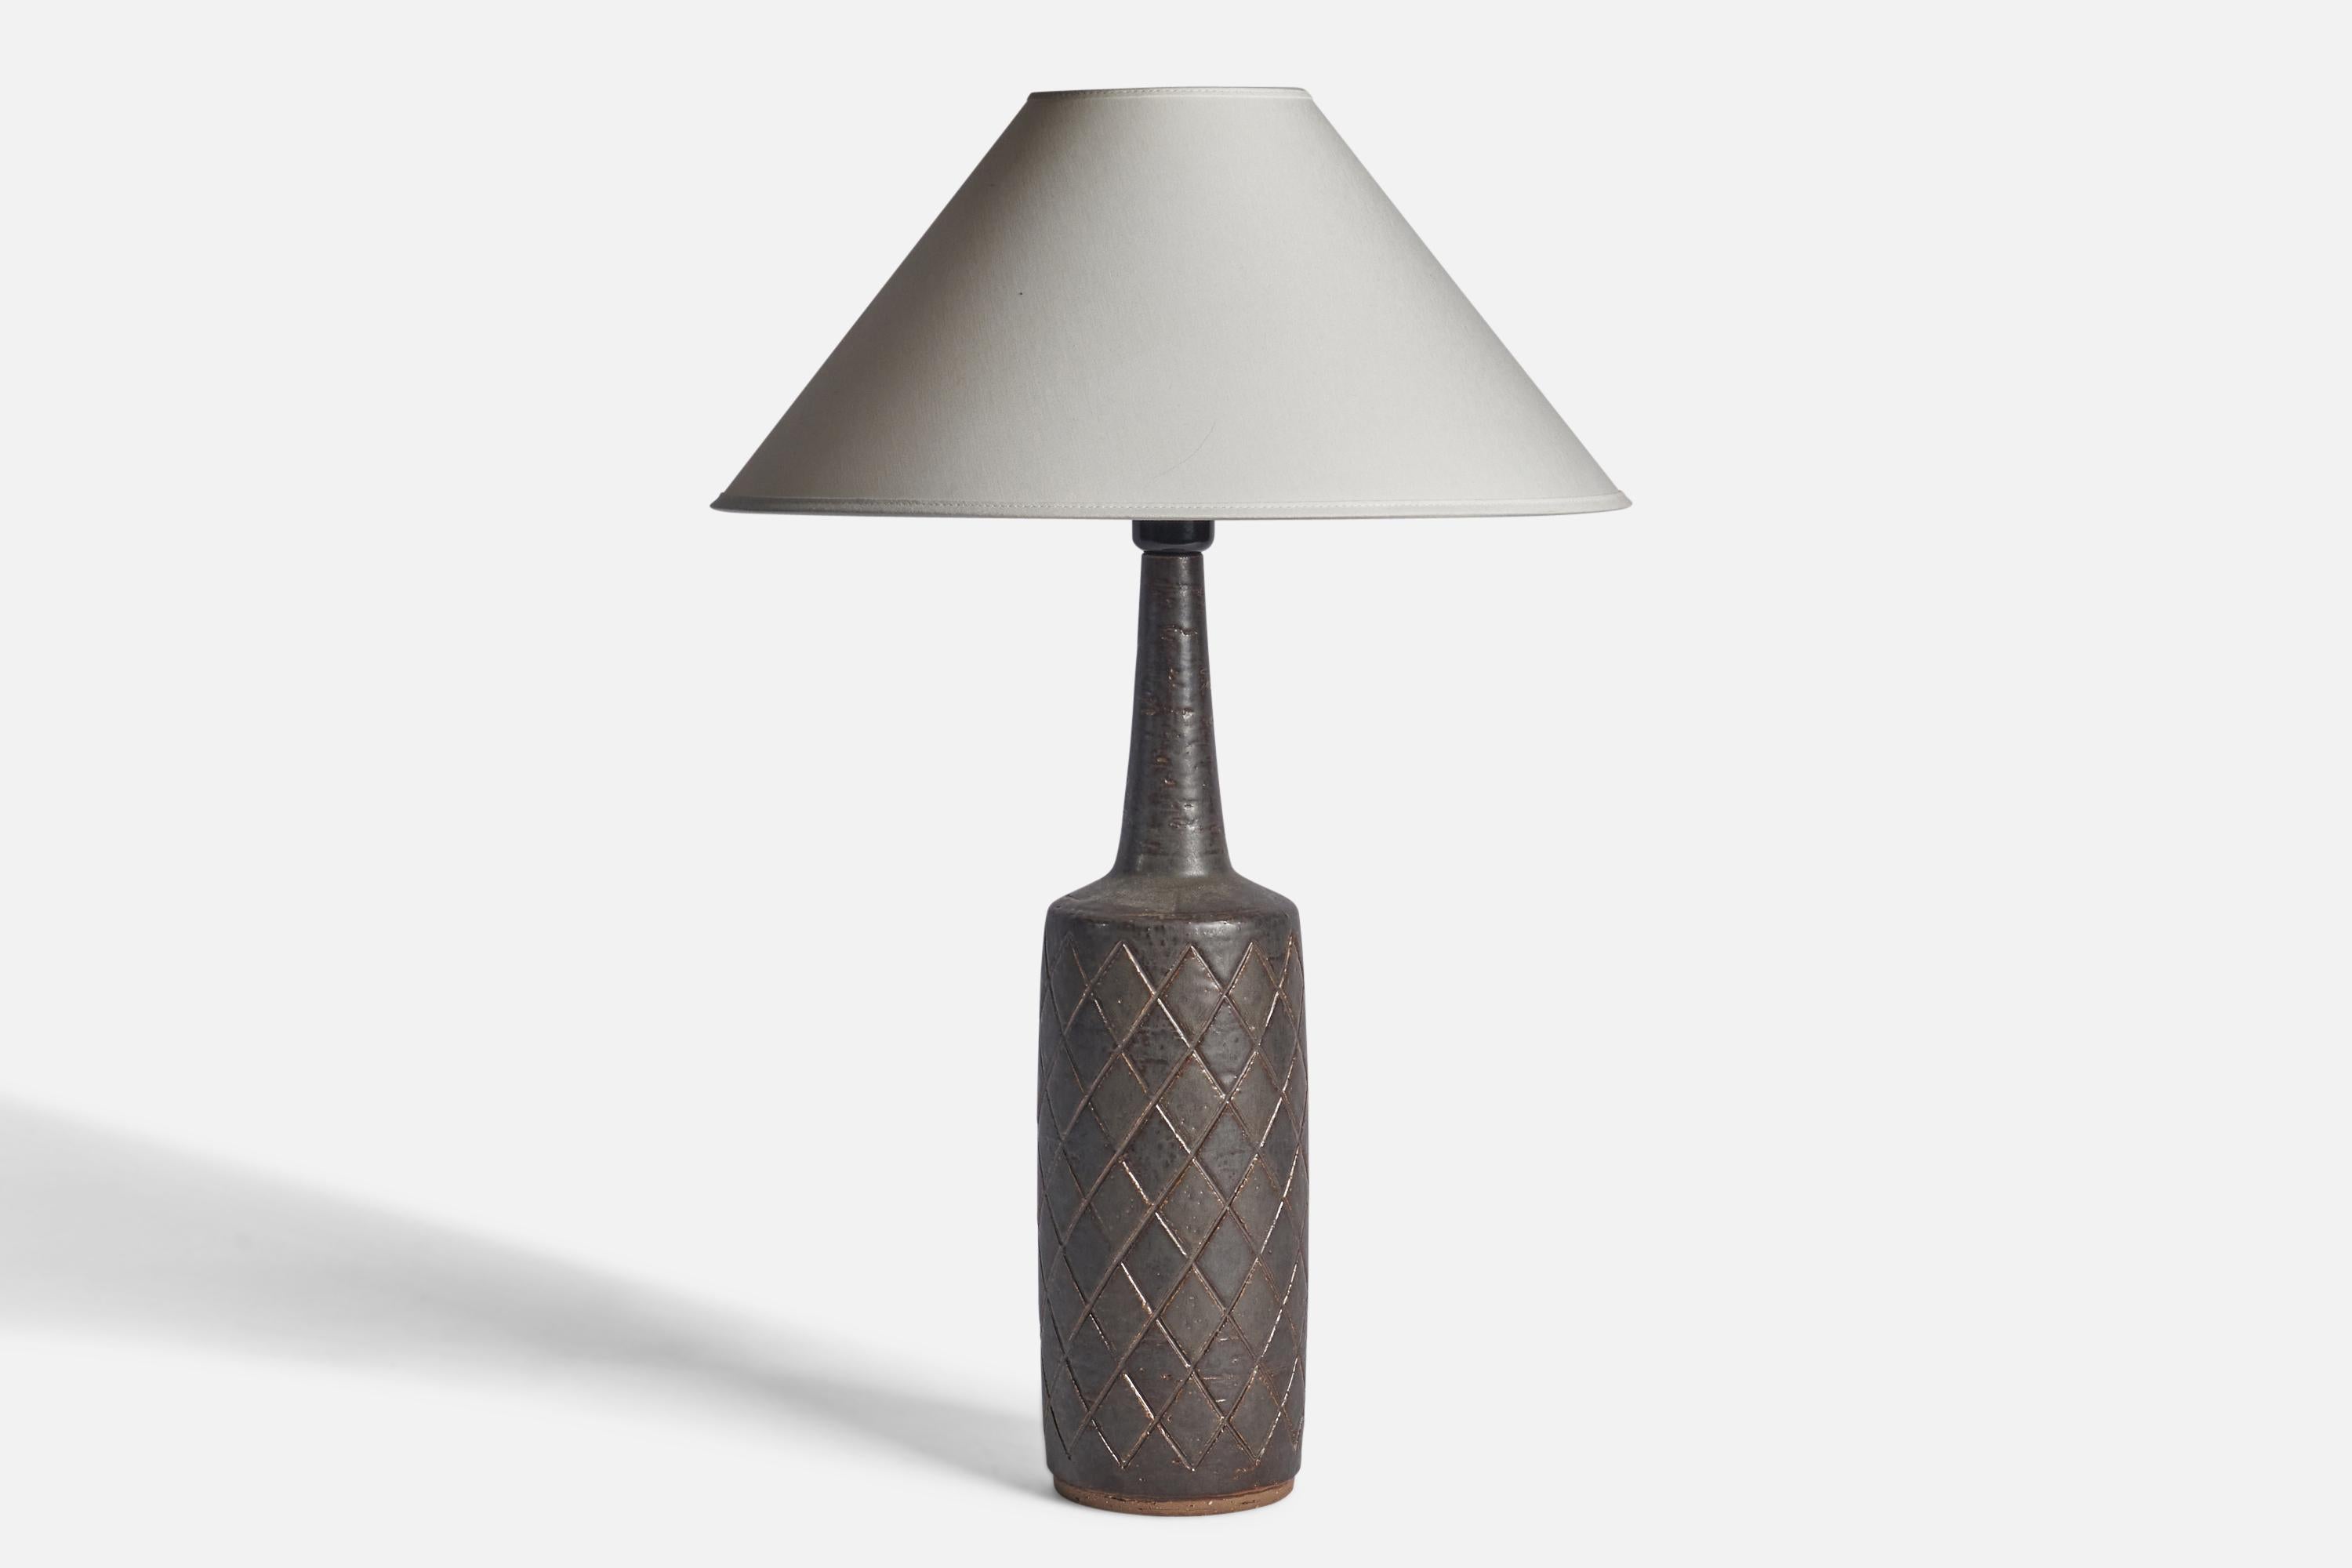 Lampe de table en grès émaillé noir et brun foncé, conçue par Per & Annelise Linneman-Schmidt et produite par Palshus, Danemark, années 1960.

Dimensions de la lampe (pouces) : 19.5